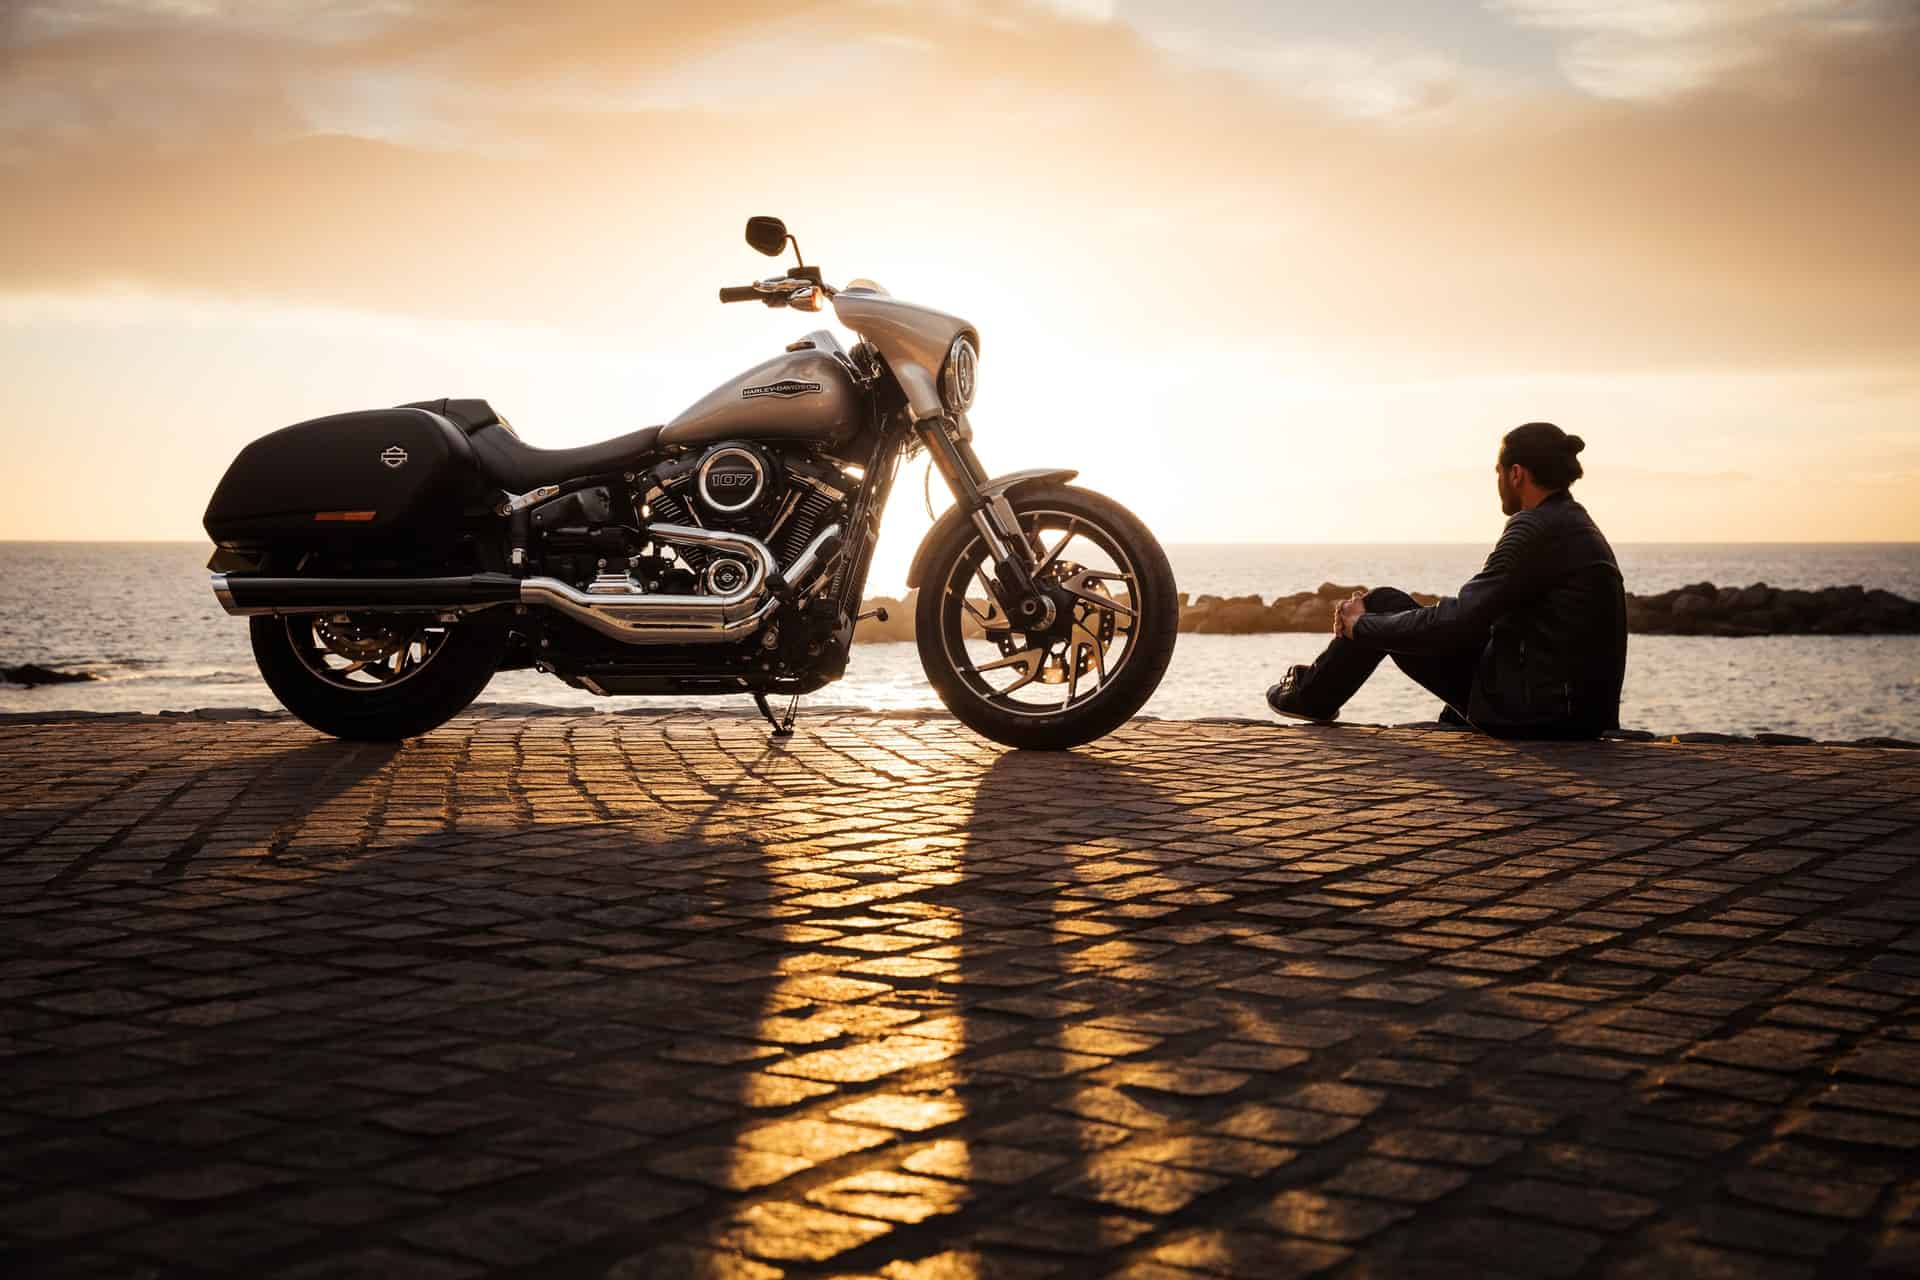 Zobacz Husqvarna Devil S Concept – motocykl przyszłości!